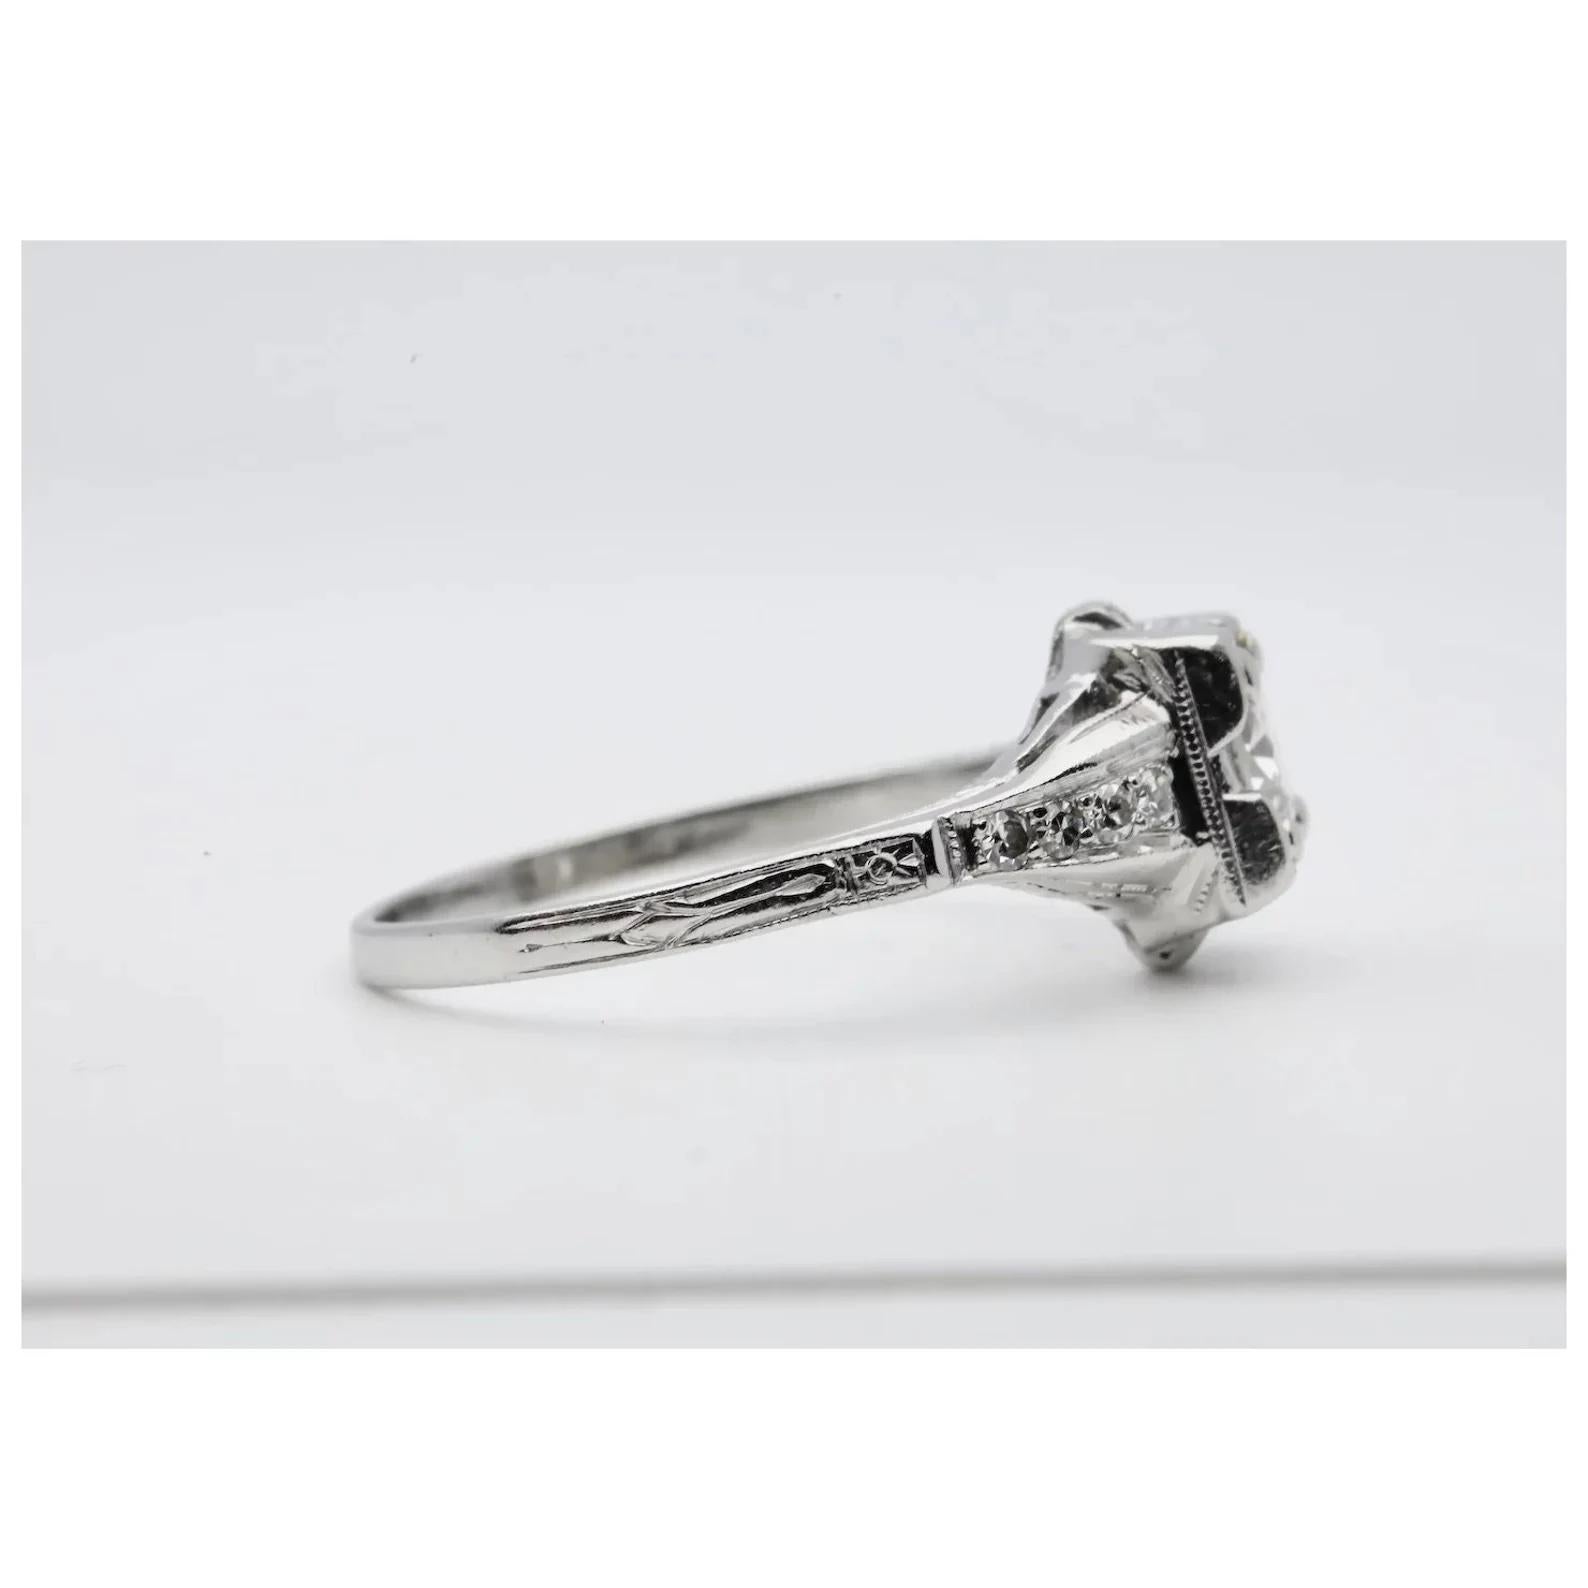 Ein handgefertigter Verlobungsring mit Diamanten im Art-Déco-Stil, gefertigt aus Platin. In der Mitte befindet sich ein 0,55 Karat schwerer Diamant im alten europäischen Schliff mit der Farbe H und der Reinheit VS2. Der Ring wird von acht weiteren,